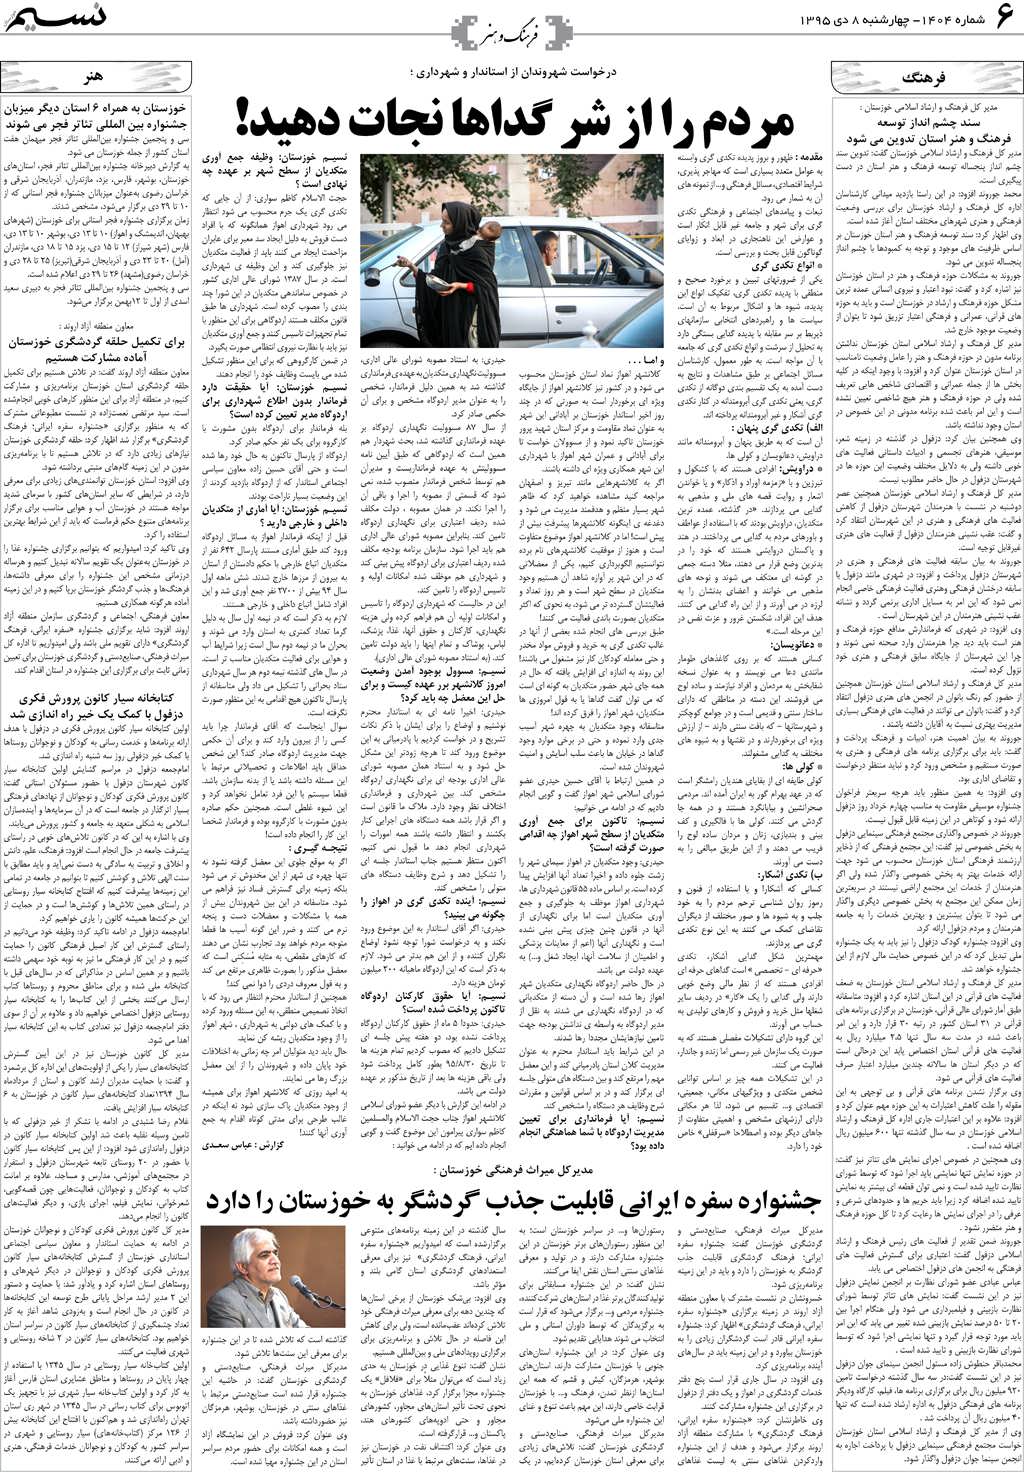 صفحه فرهنگ و هنر روزنامه نسیم شماره 1404